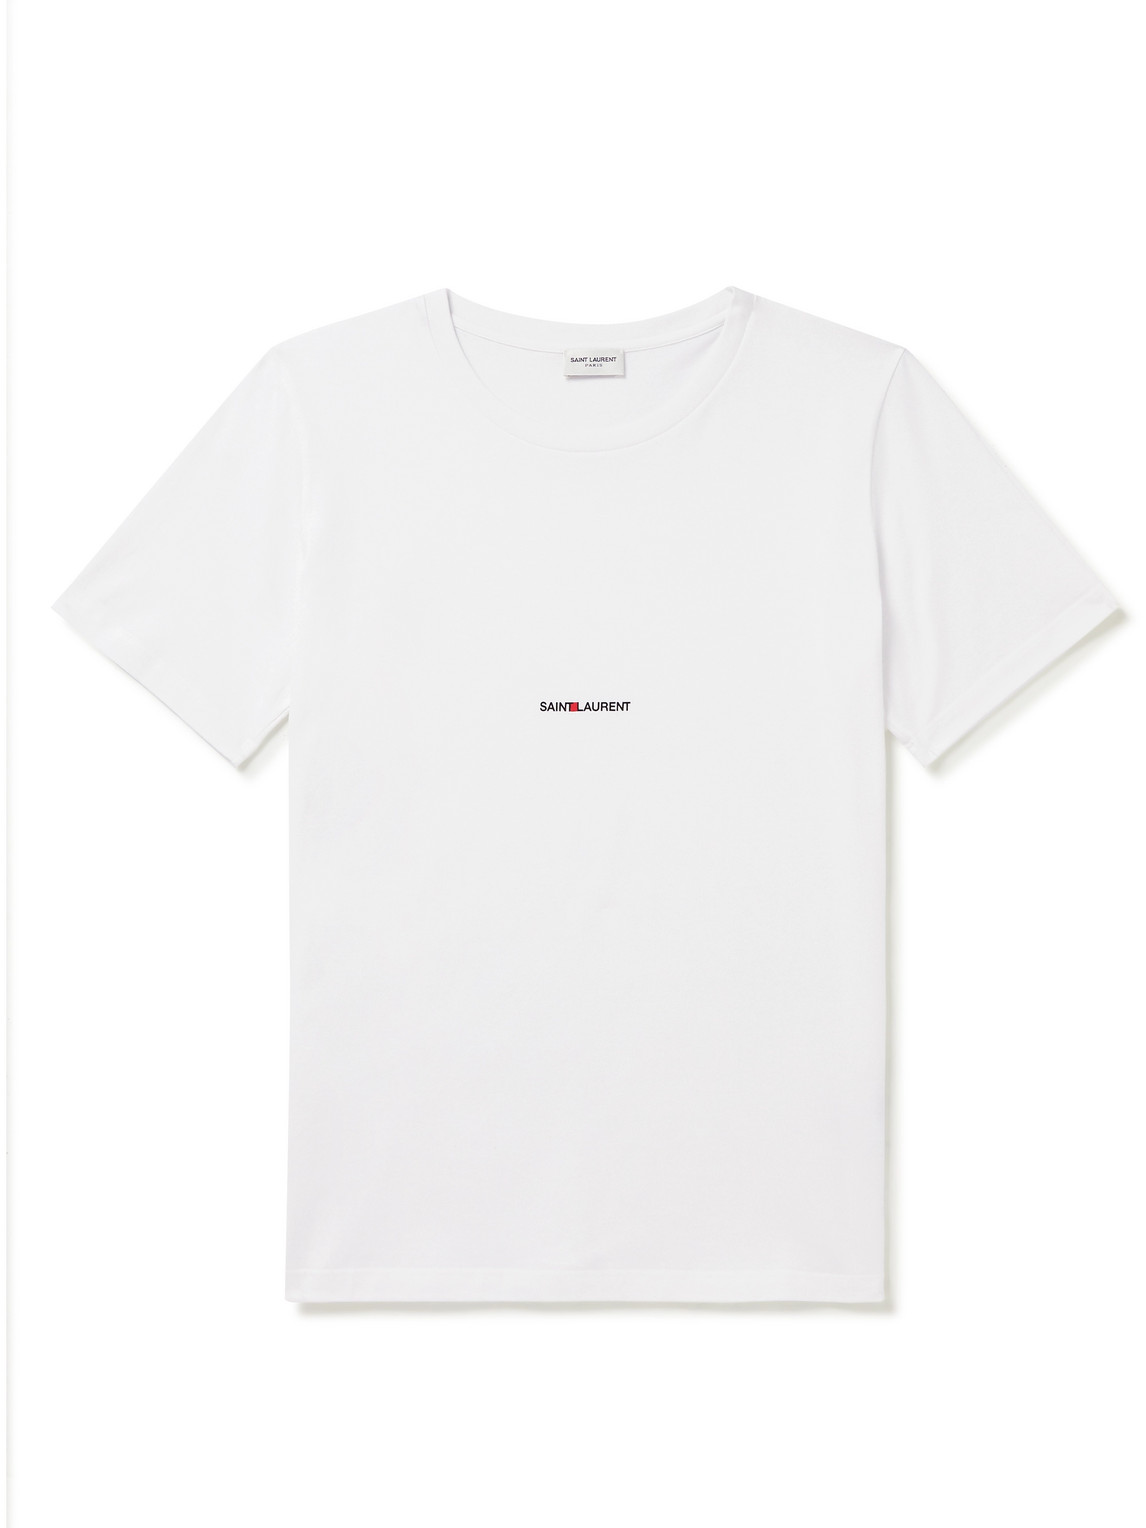 SAINT LAURENT - Logo-Print Cotton-Jersey T-Shirt - Men - White - M von SAINT LAURENT